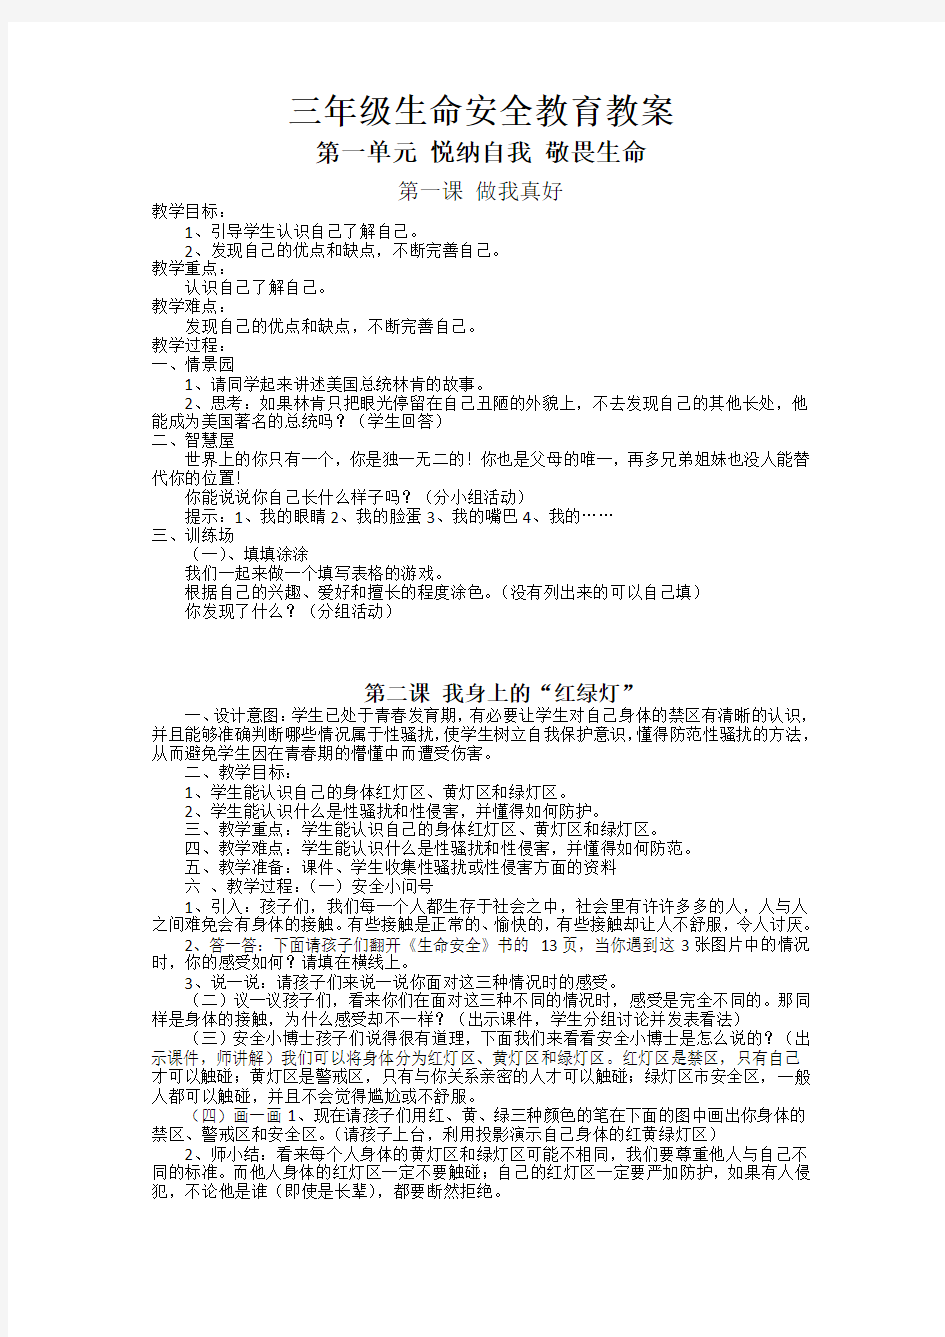 武汉版三年级生命安全教育全册教案(已排版好的,可以直接打印)